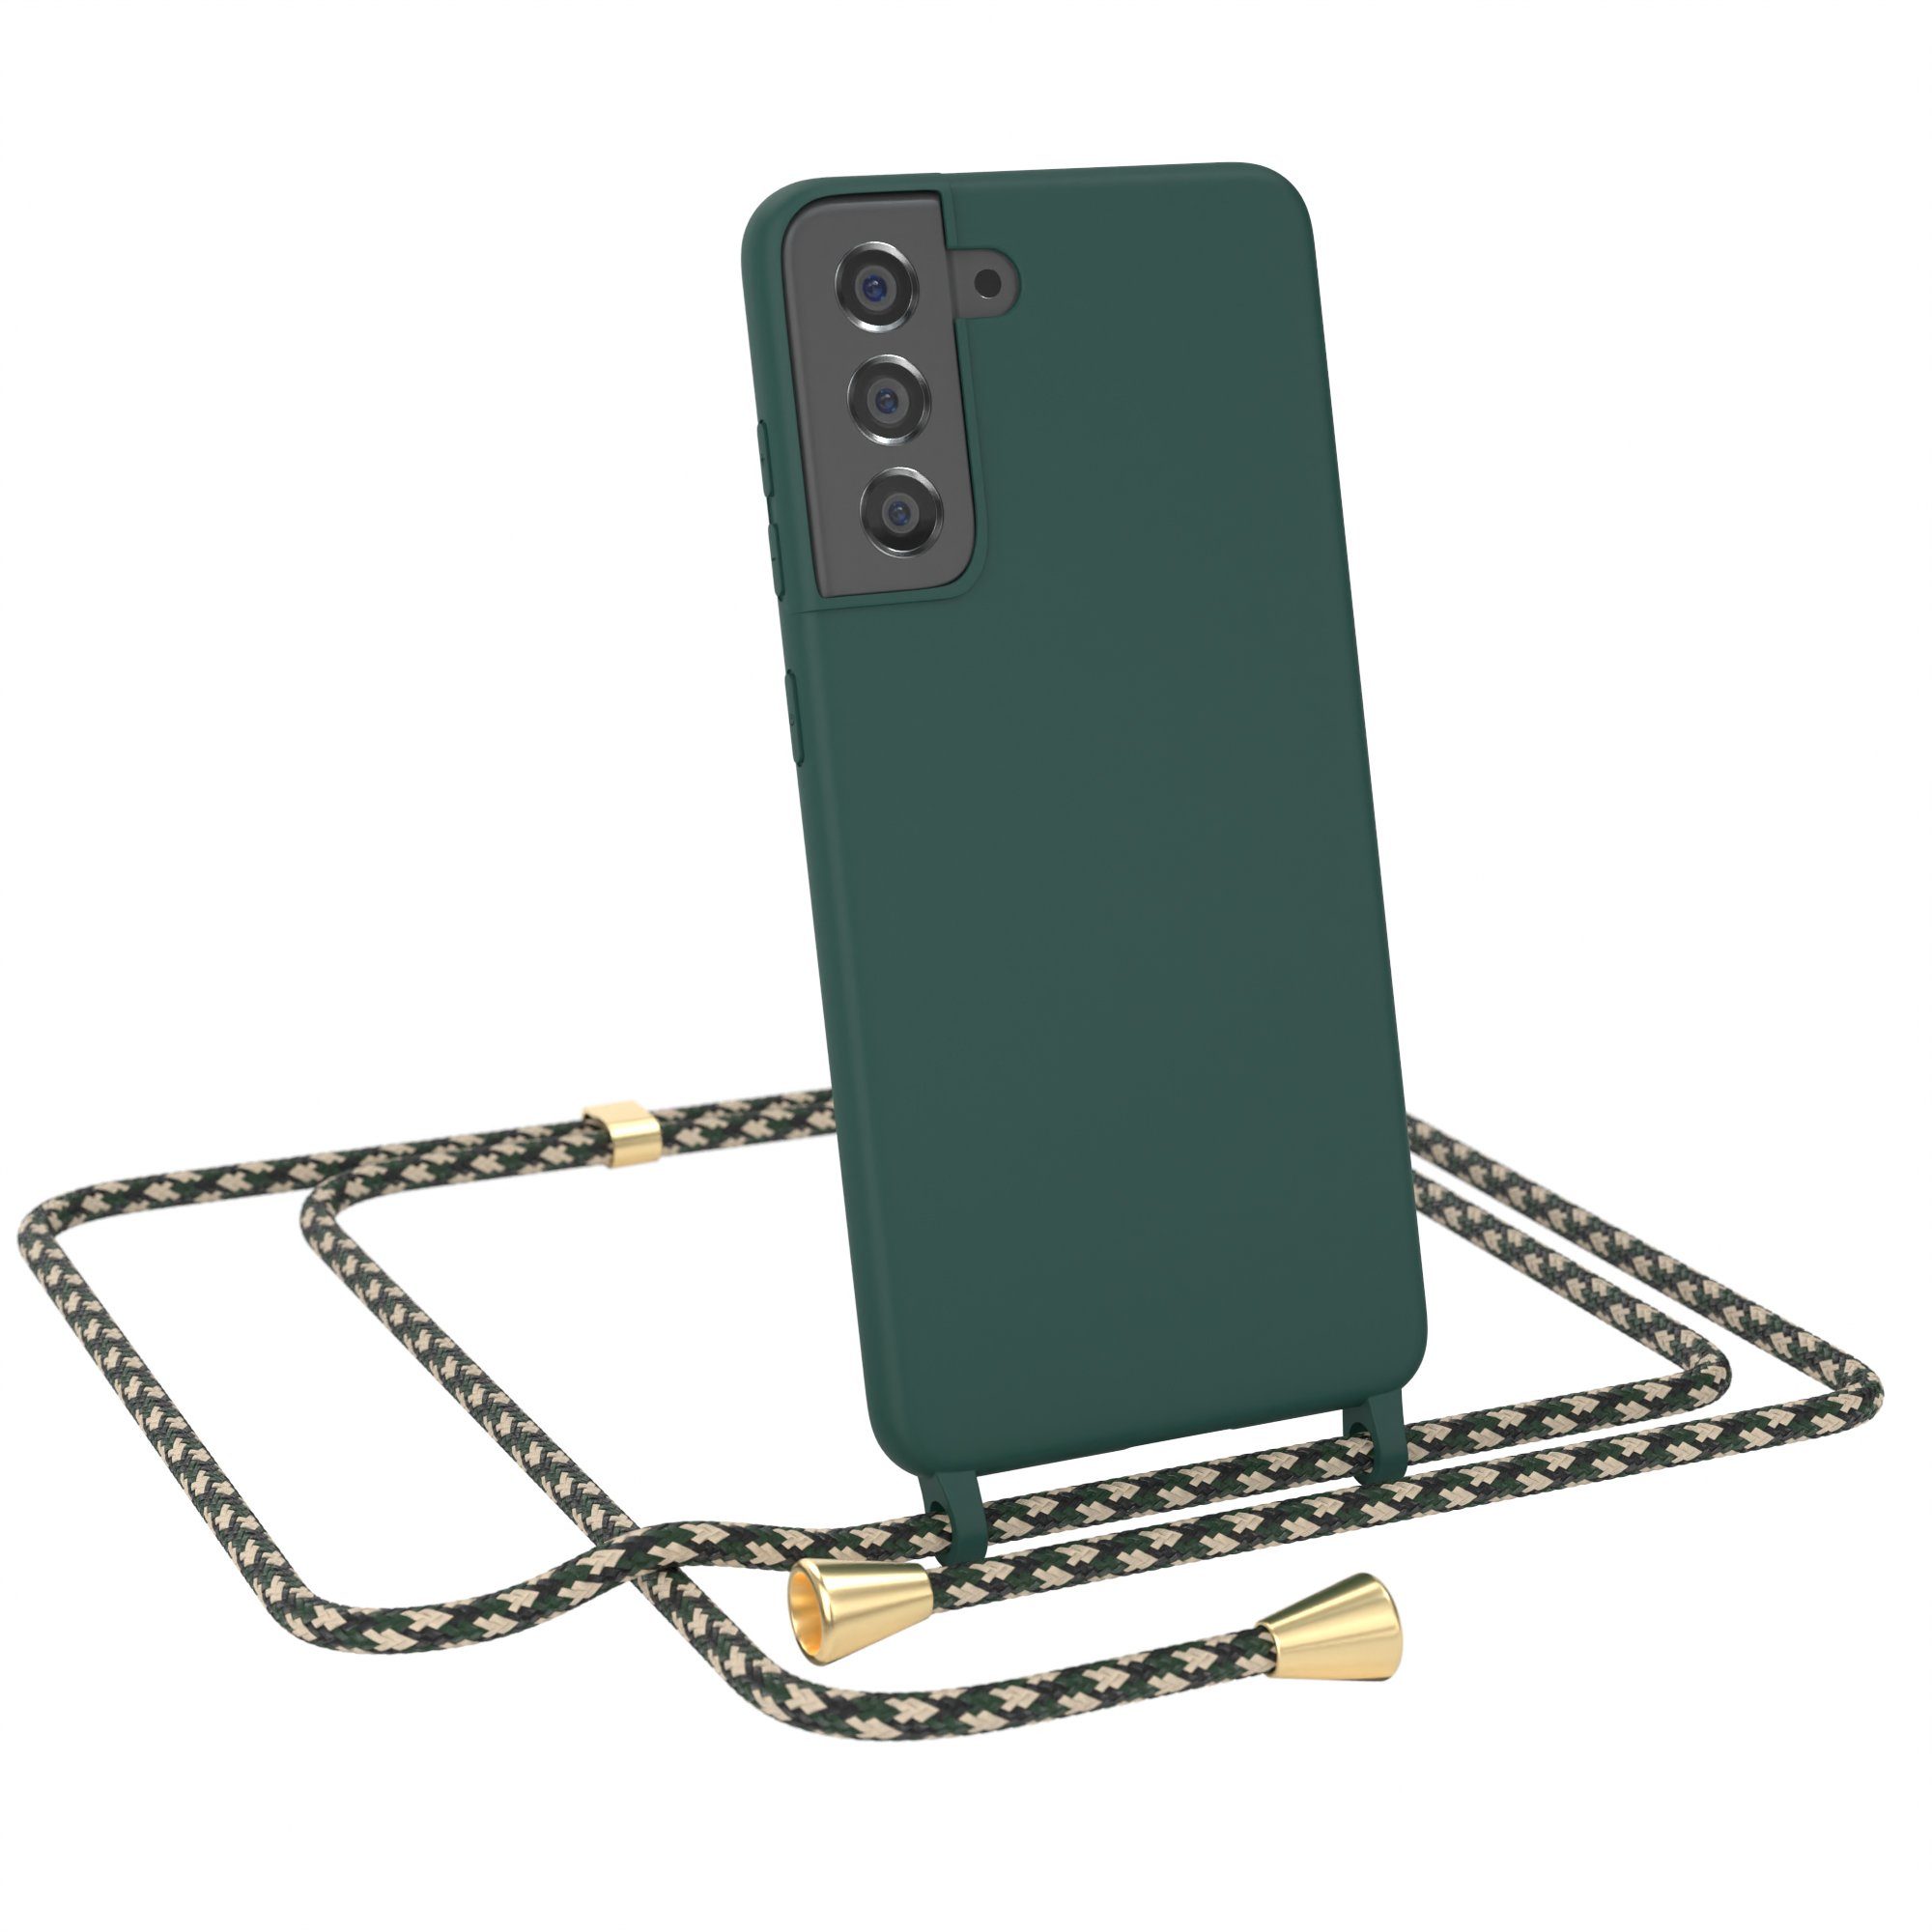 EAZY CASE Handykette Runde Silikon Kette für Samsung Galaxy S21 FE 5G 6,41 Zoll, Kette zum Umhängen Smartphonekette für Unterwegs plus Cover Navy Grün